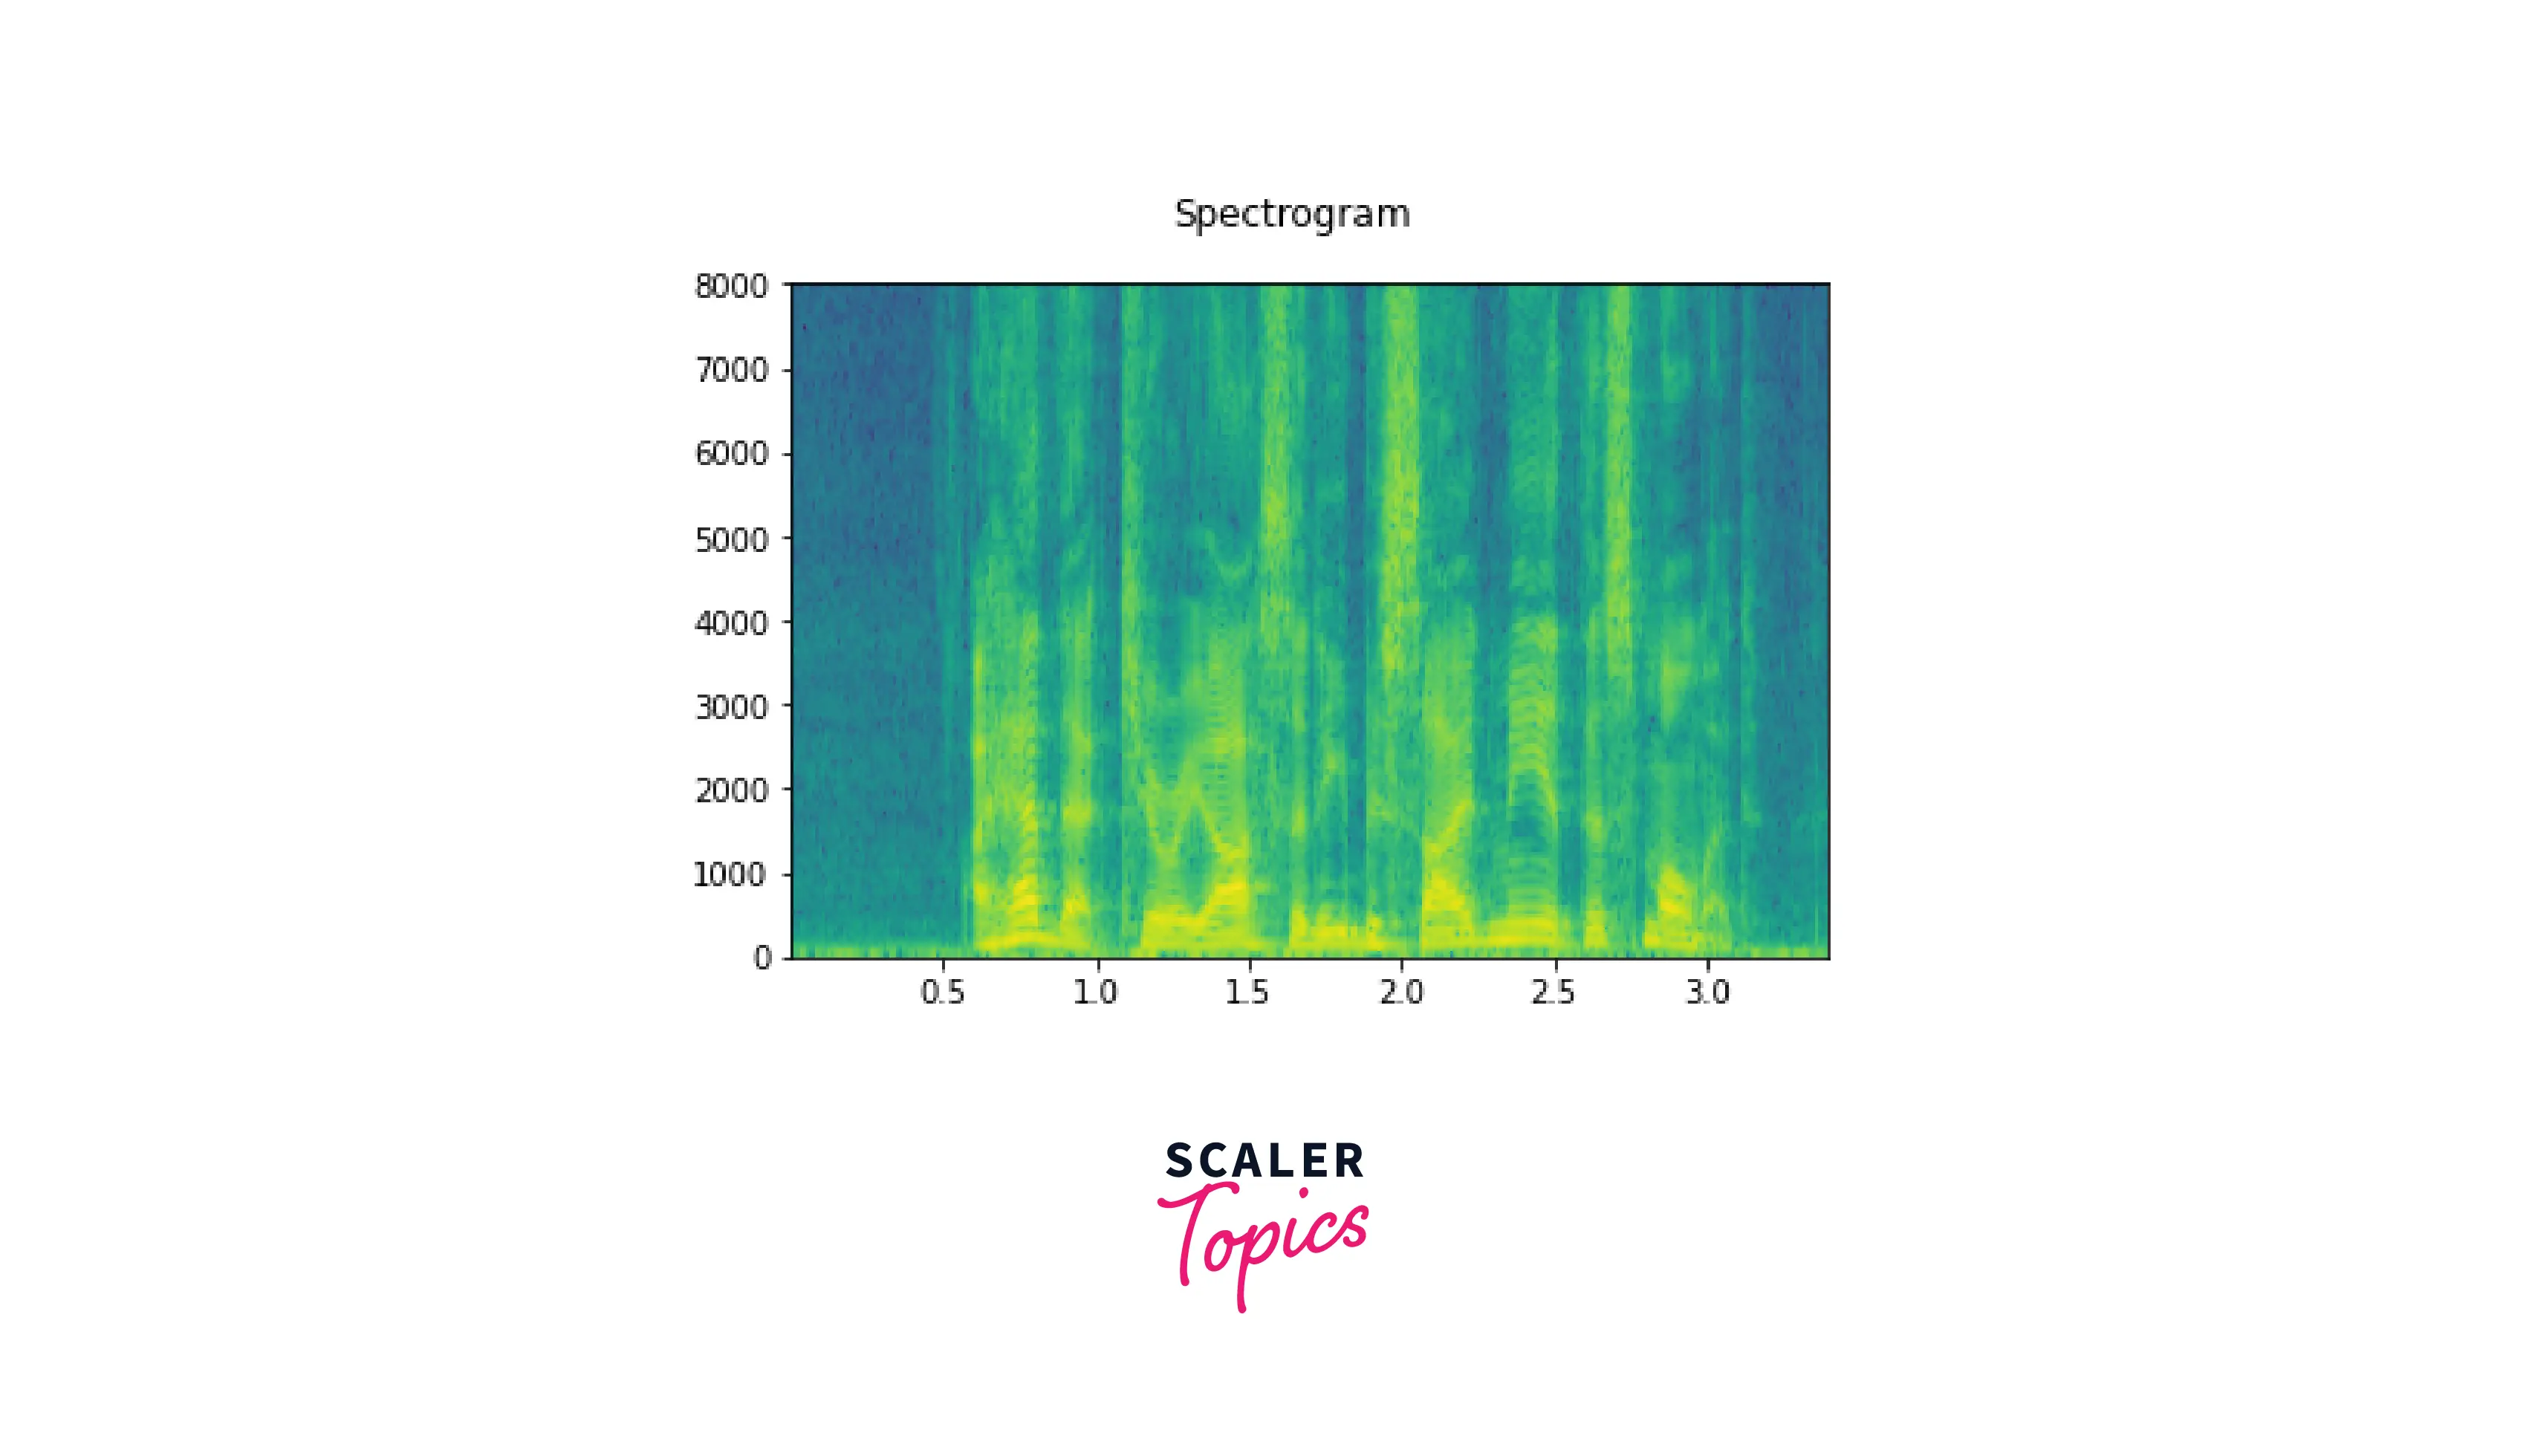 helper-function-to-plot-spectrogram